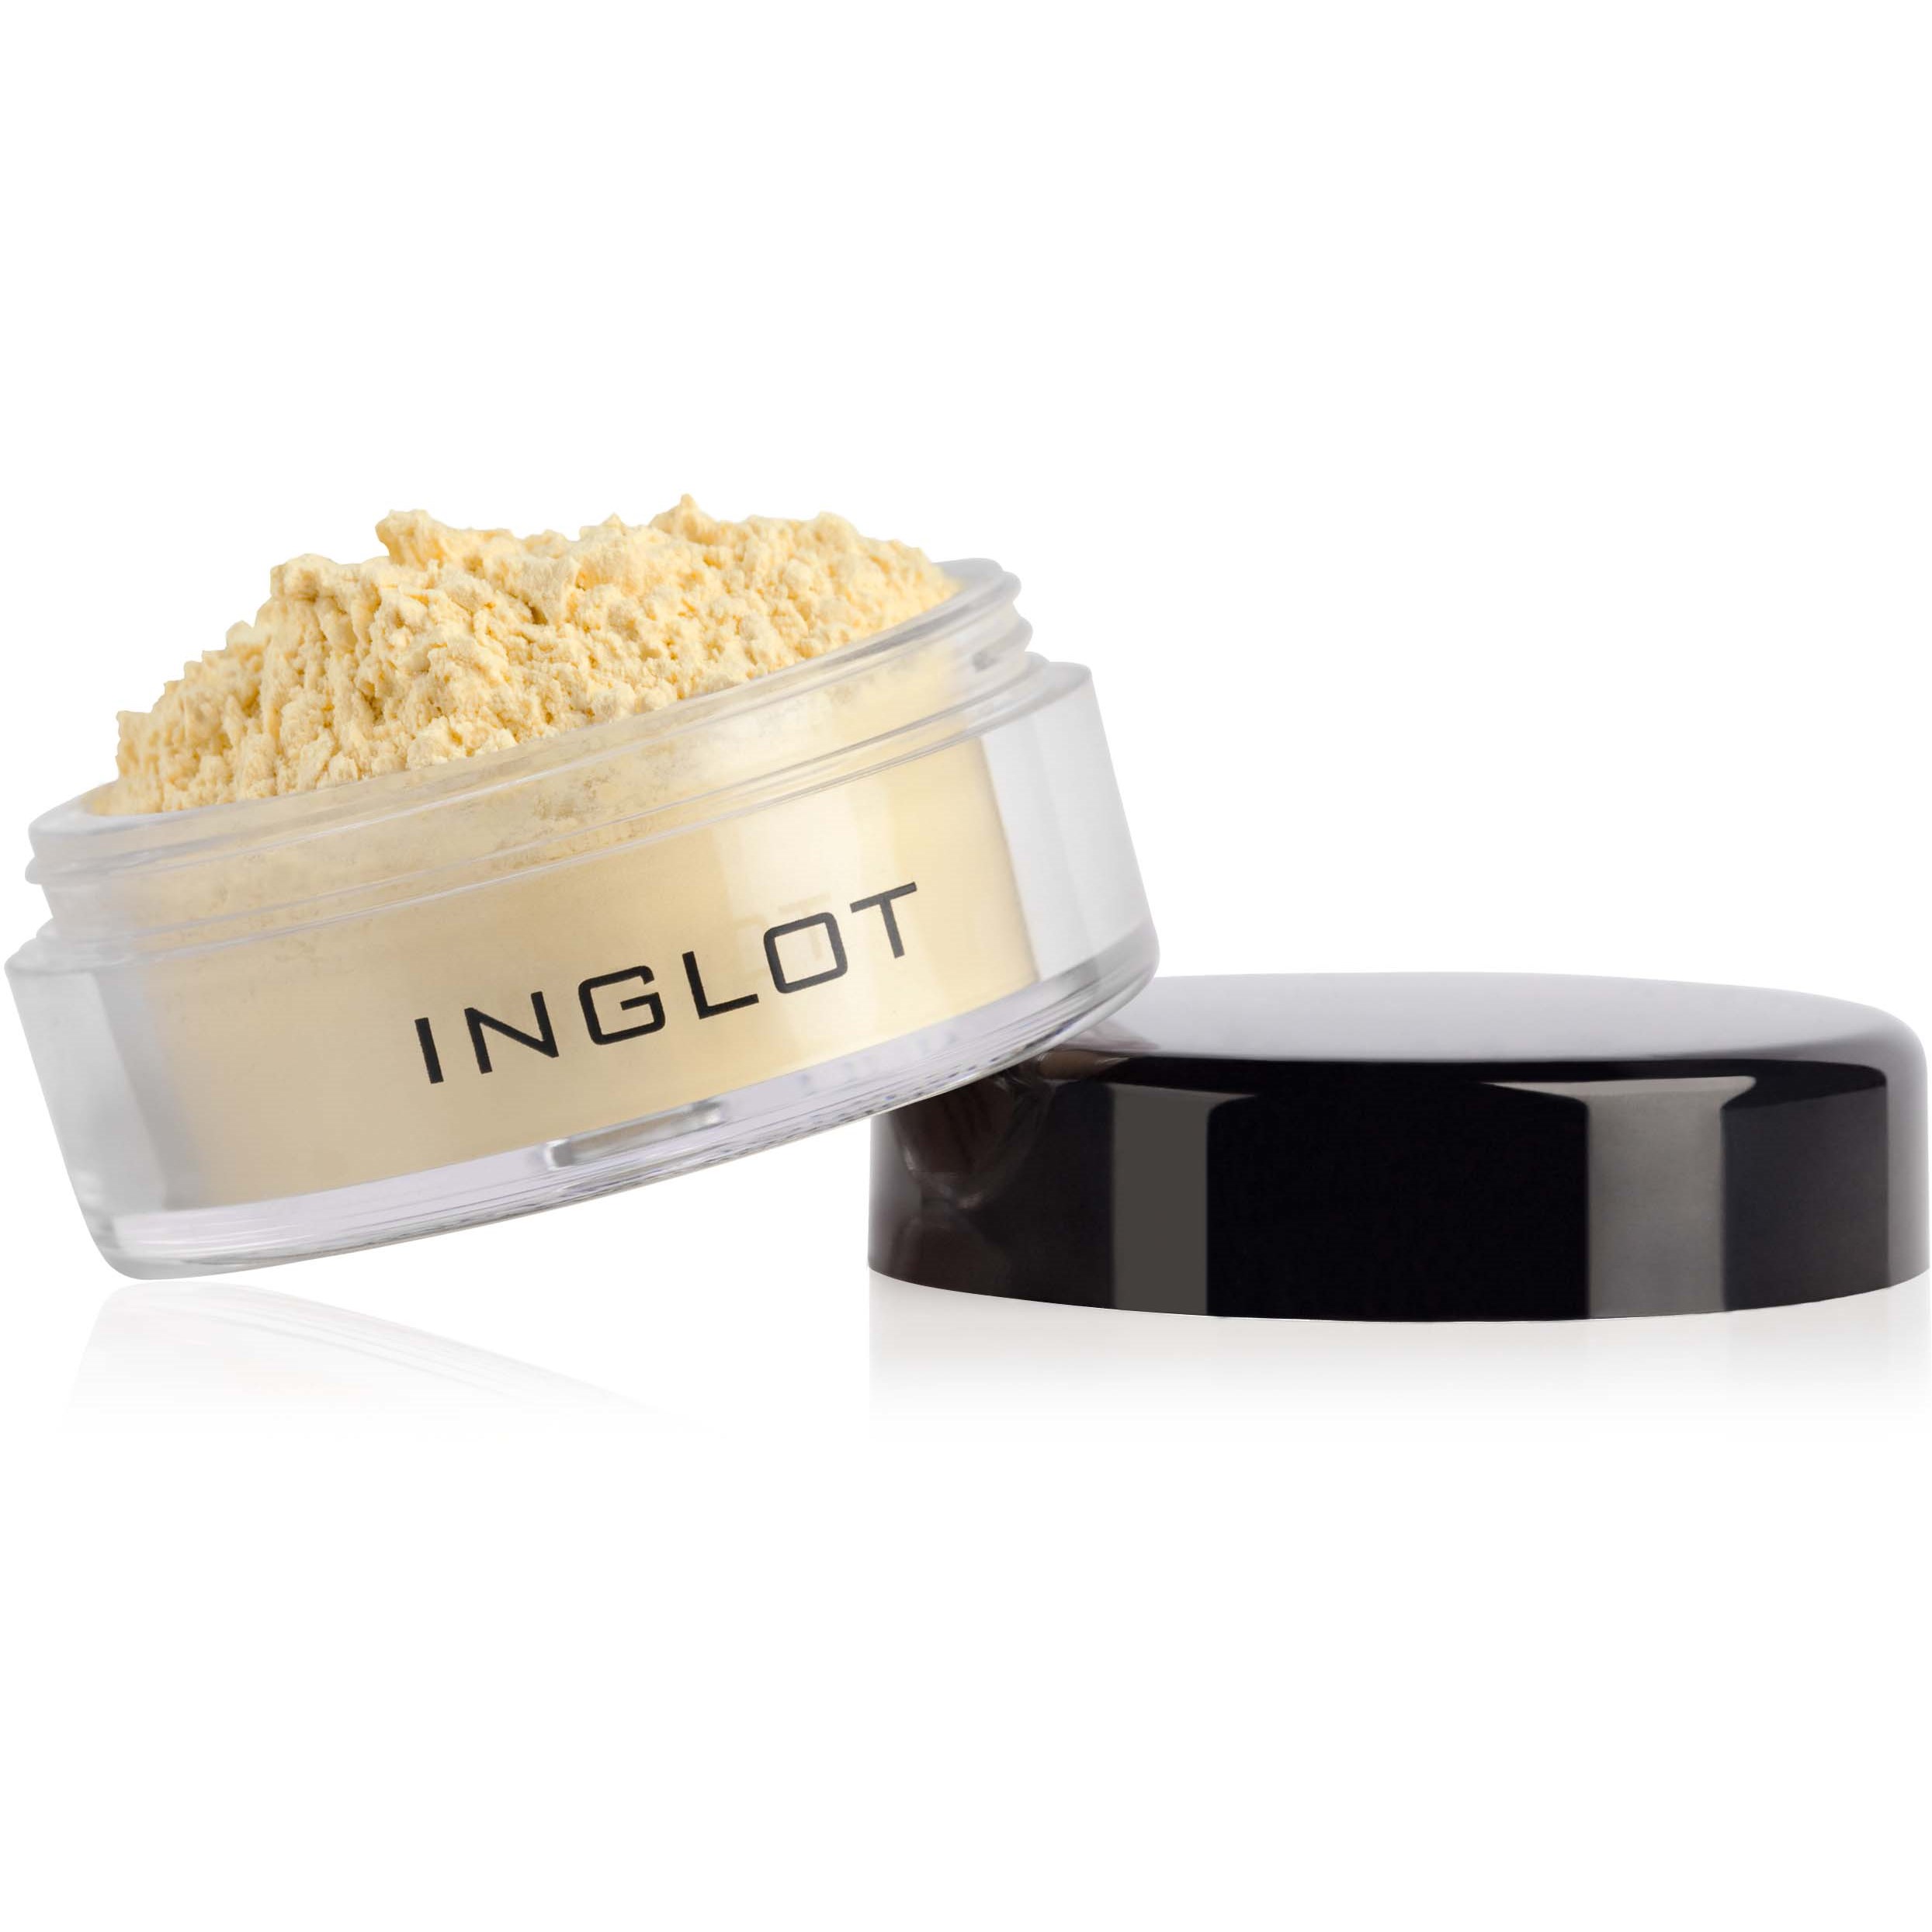 Inglot Translucent Loose Powder 217